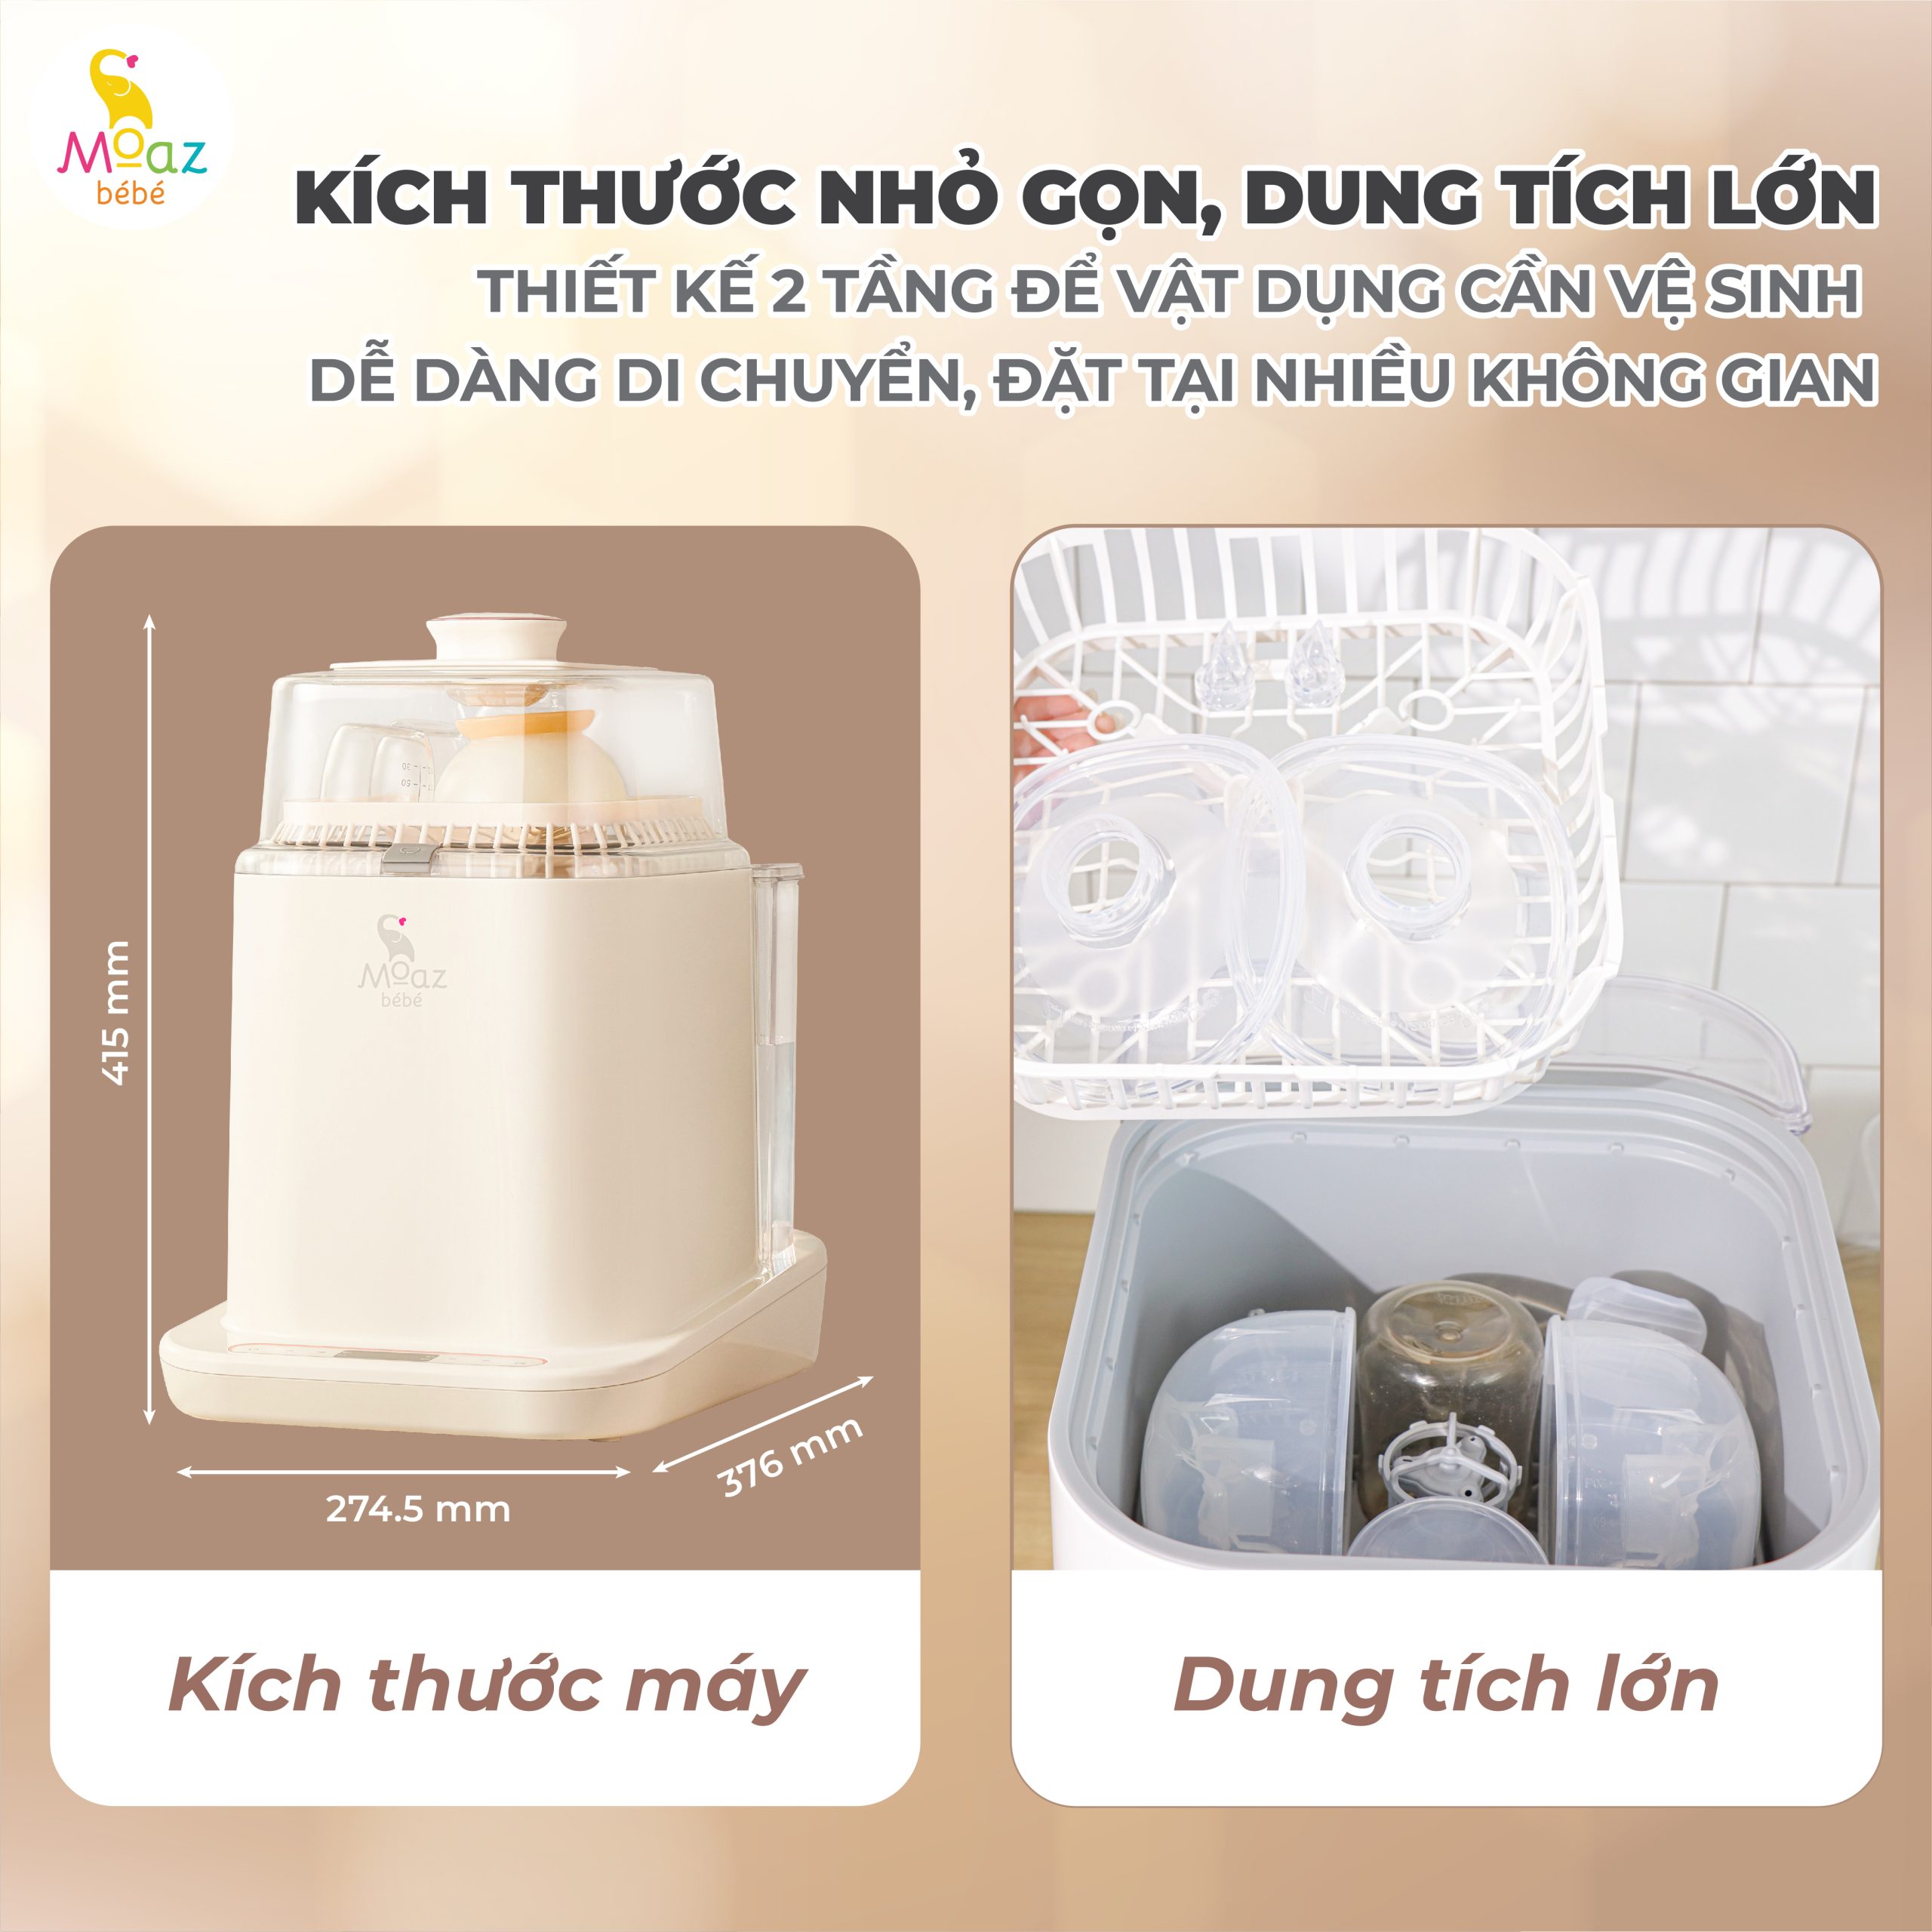 Thông tin sản phẩm kỹ thuật máy rửa bình sữa MB 064